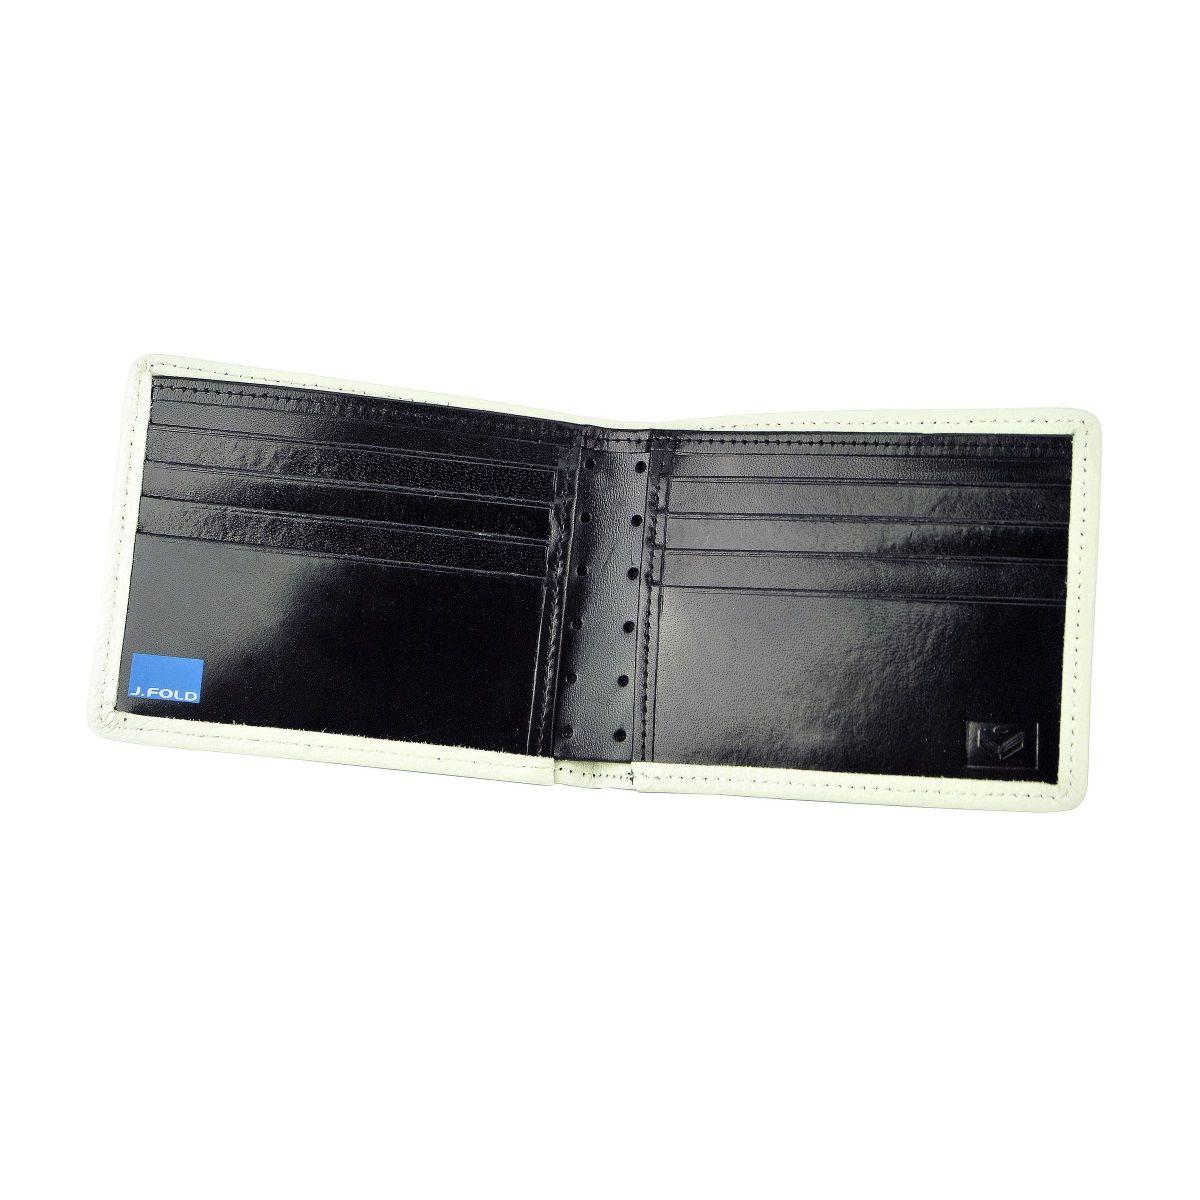 J.FOLD ארנק עור Stitched Panel - שחור